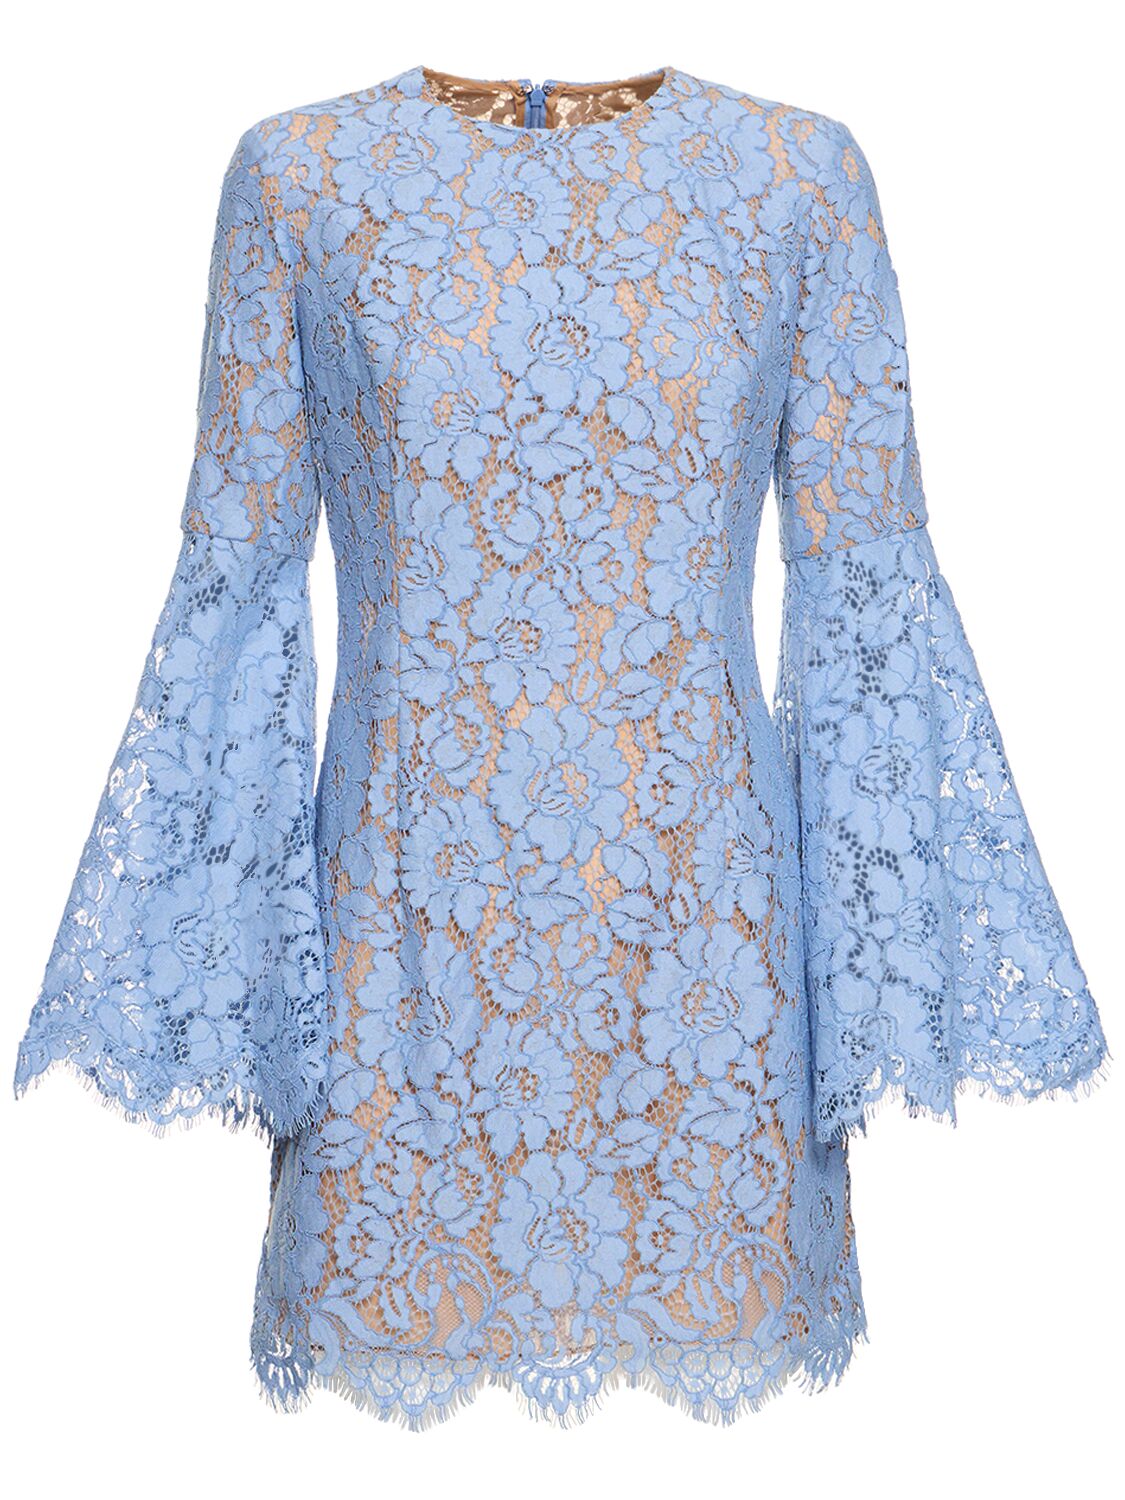 Michael Kors Floral Lace Cotton Blend Mini Dress In Light Blue